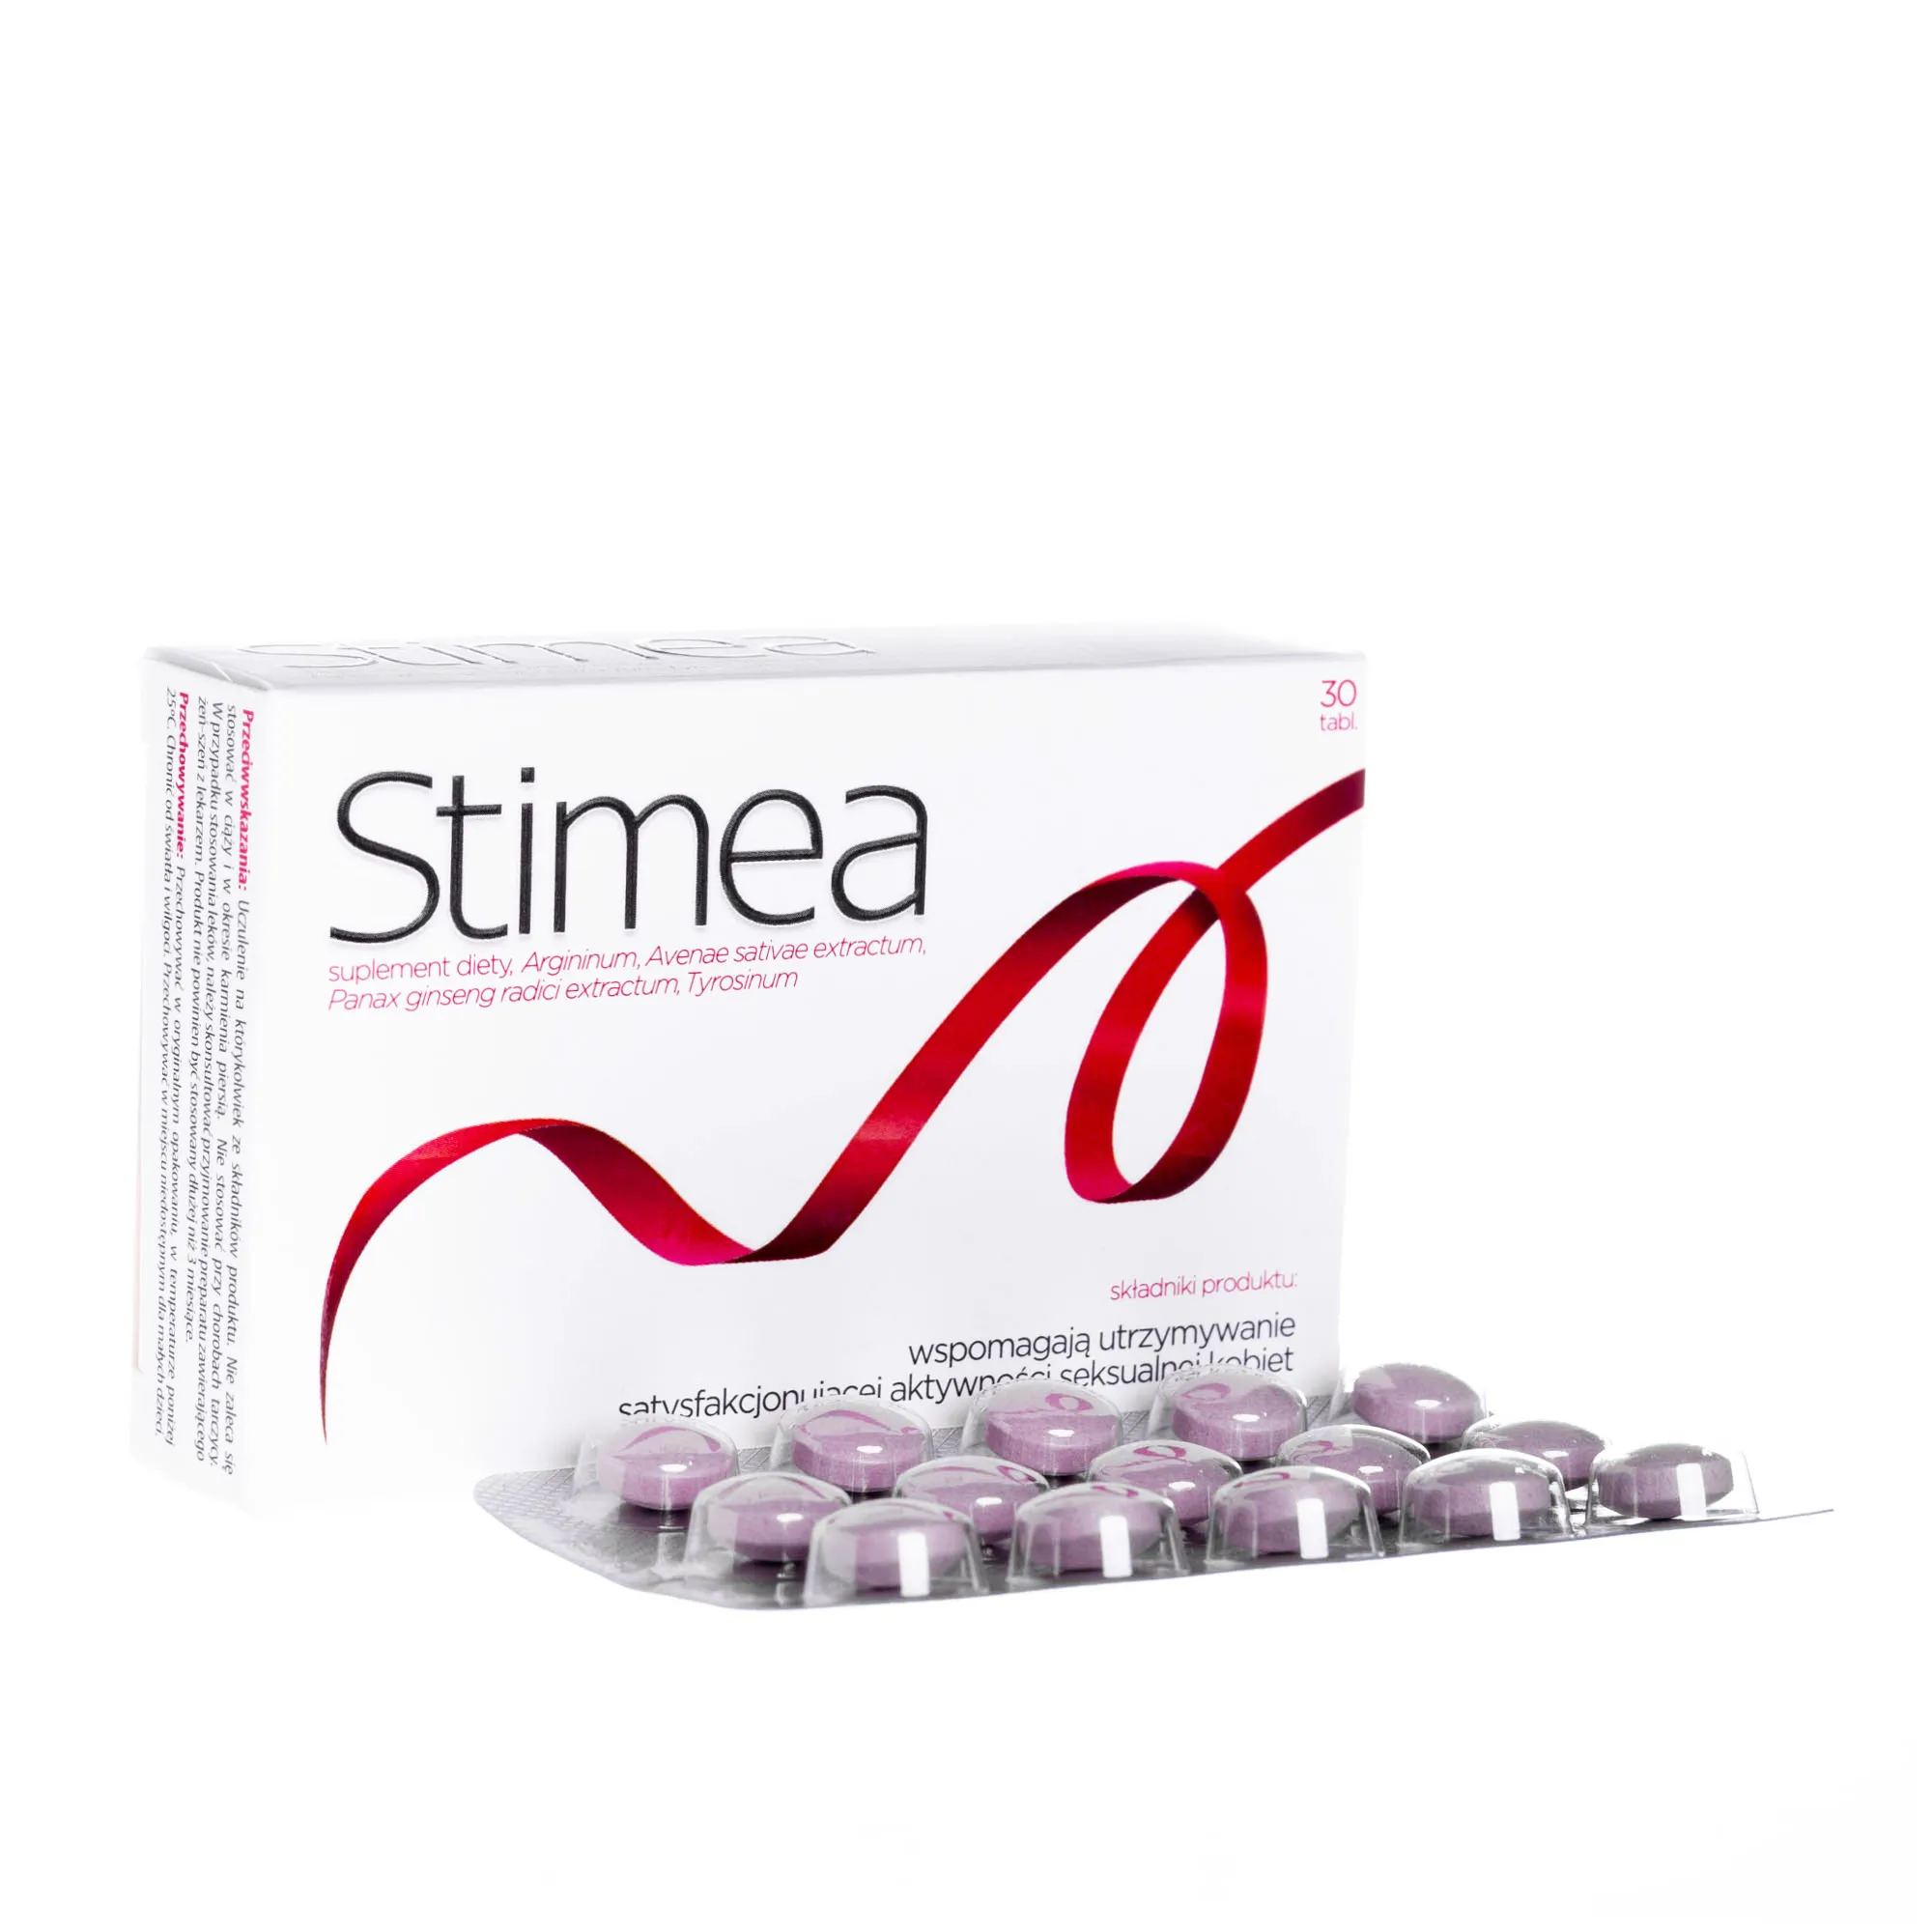 Stimea - 30 tabletek wspomagających utrzymywanie satysfakcjonującej aktywności seksualnej kobiet 